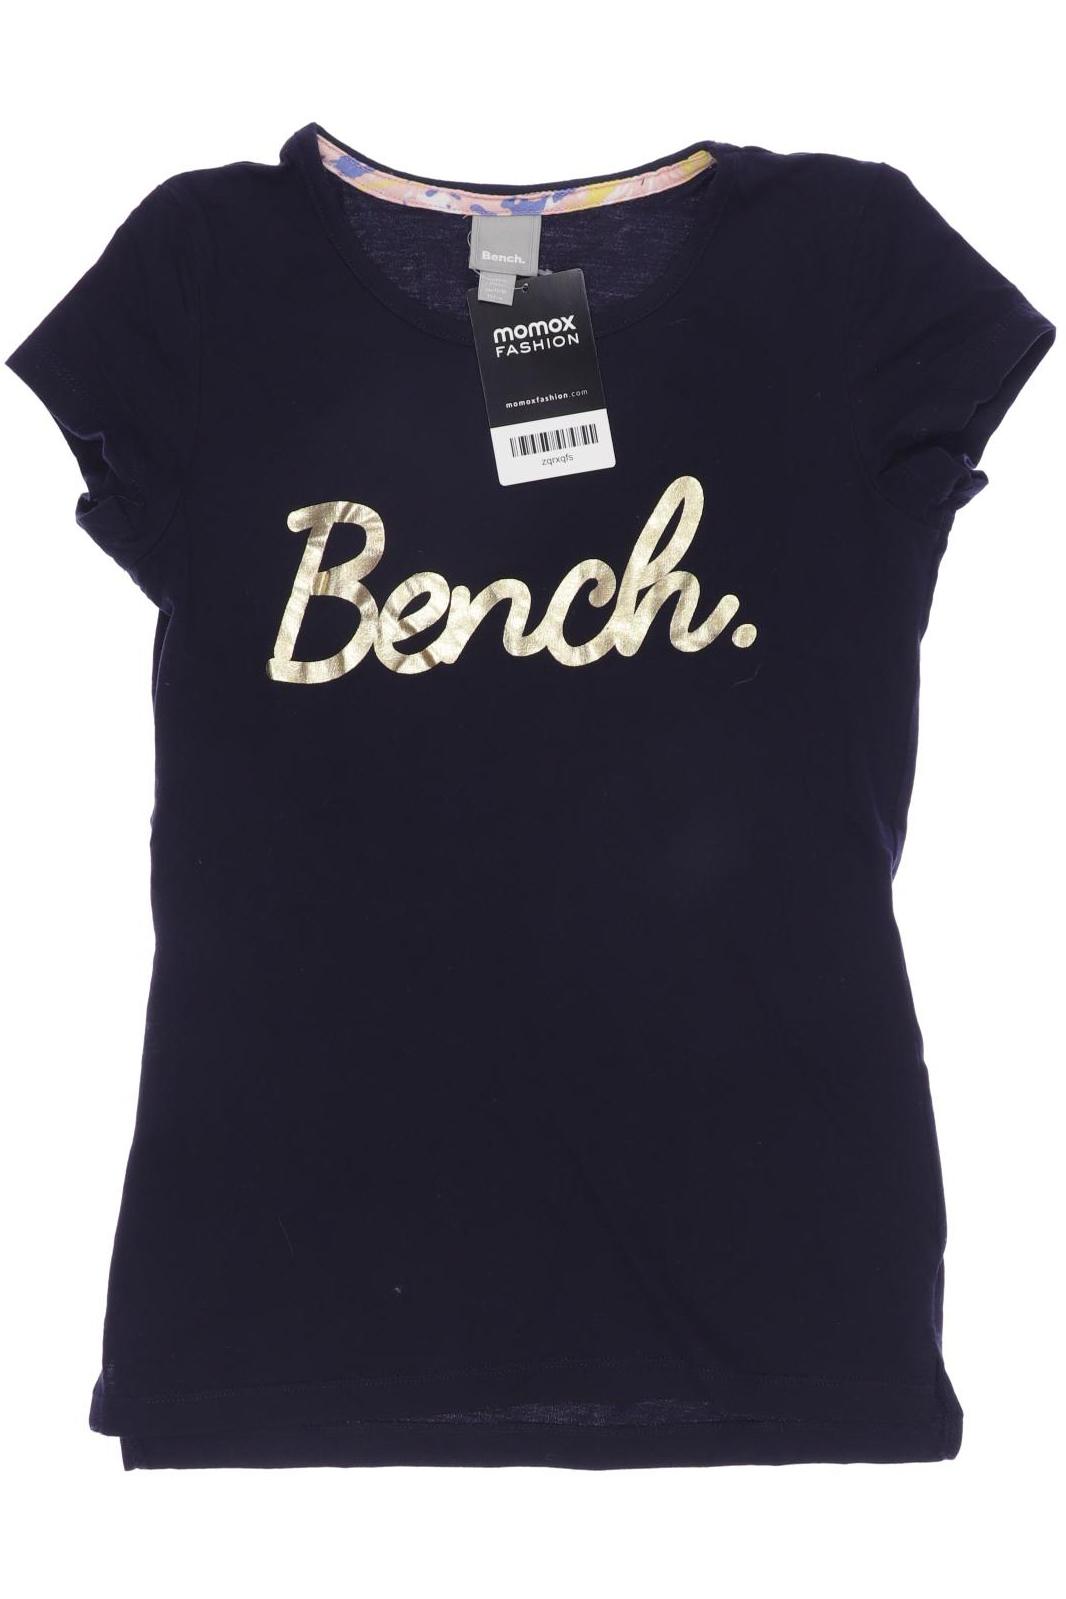 Bench. Mädchen T-Shirt, marineblau von Bench.